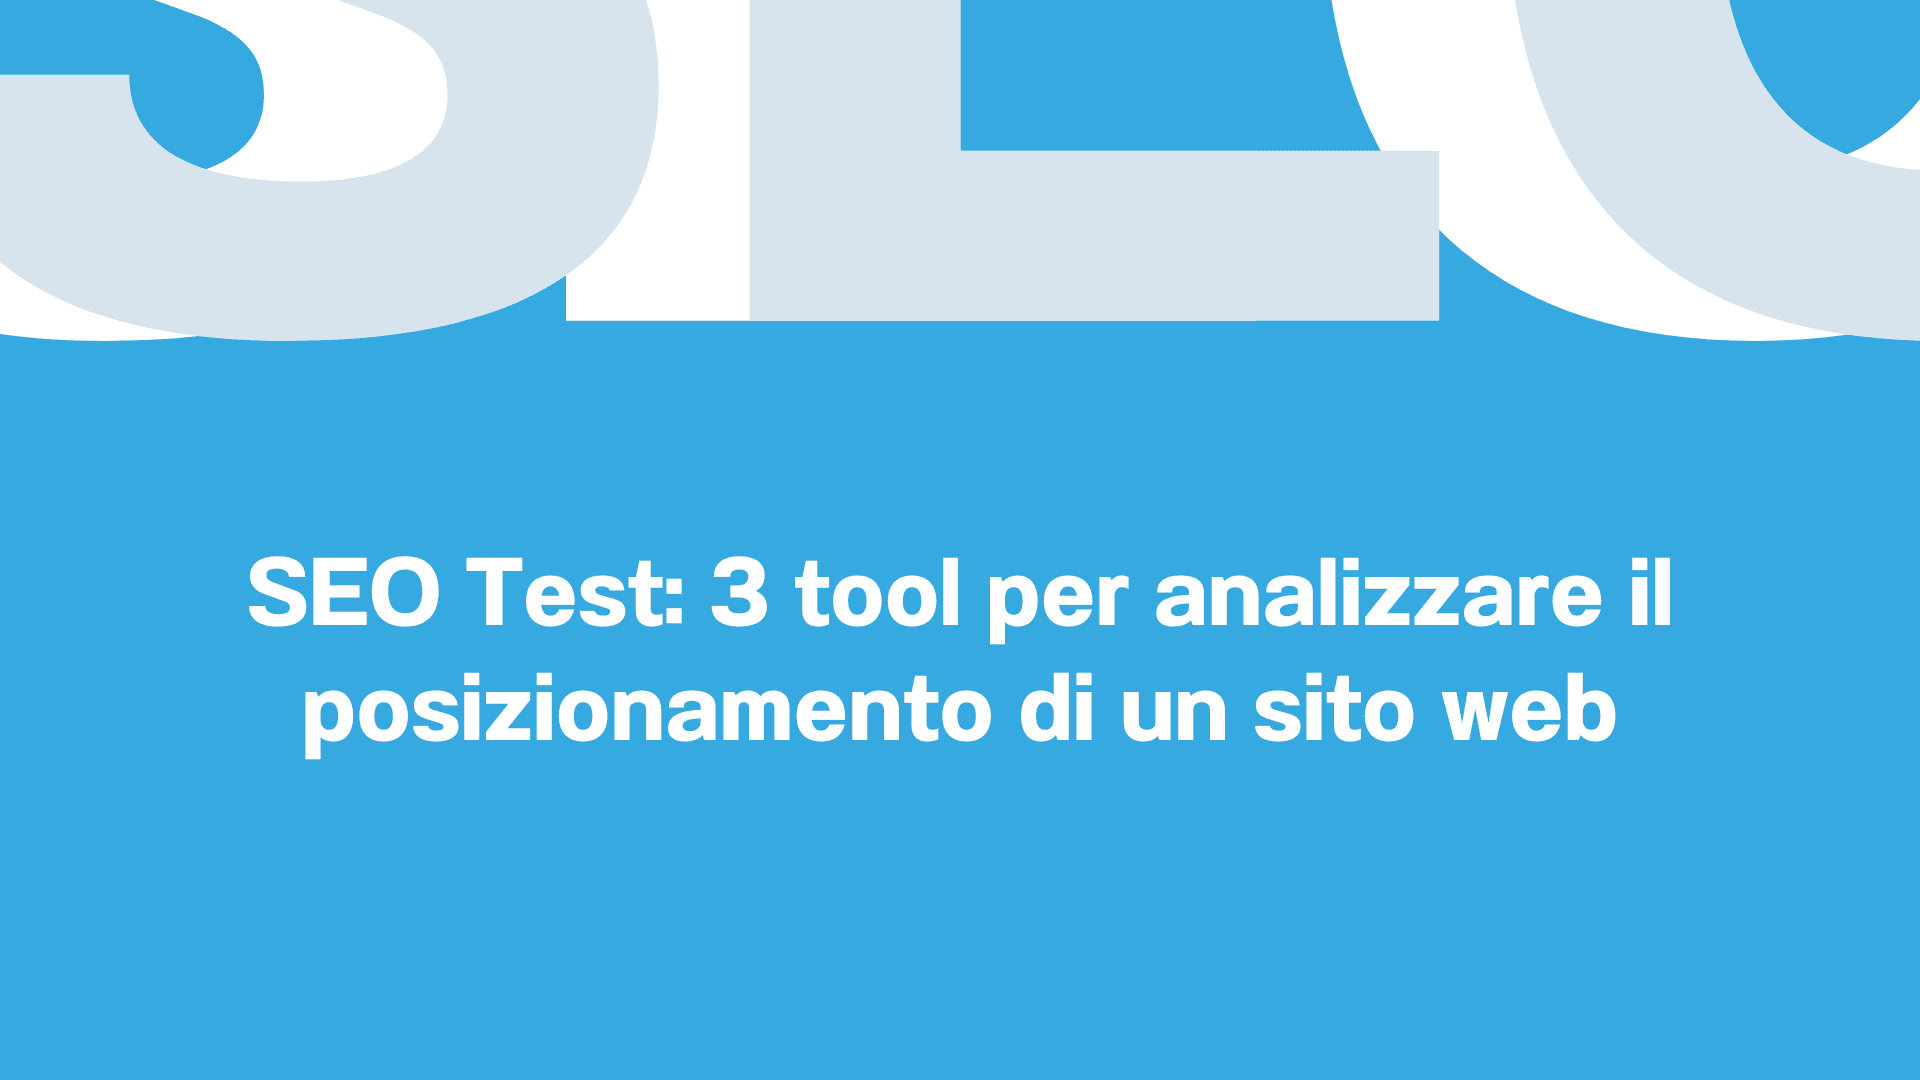 SEO Test 3 tool per analizzare il posizionamento di un sito web